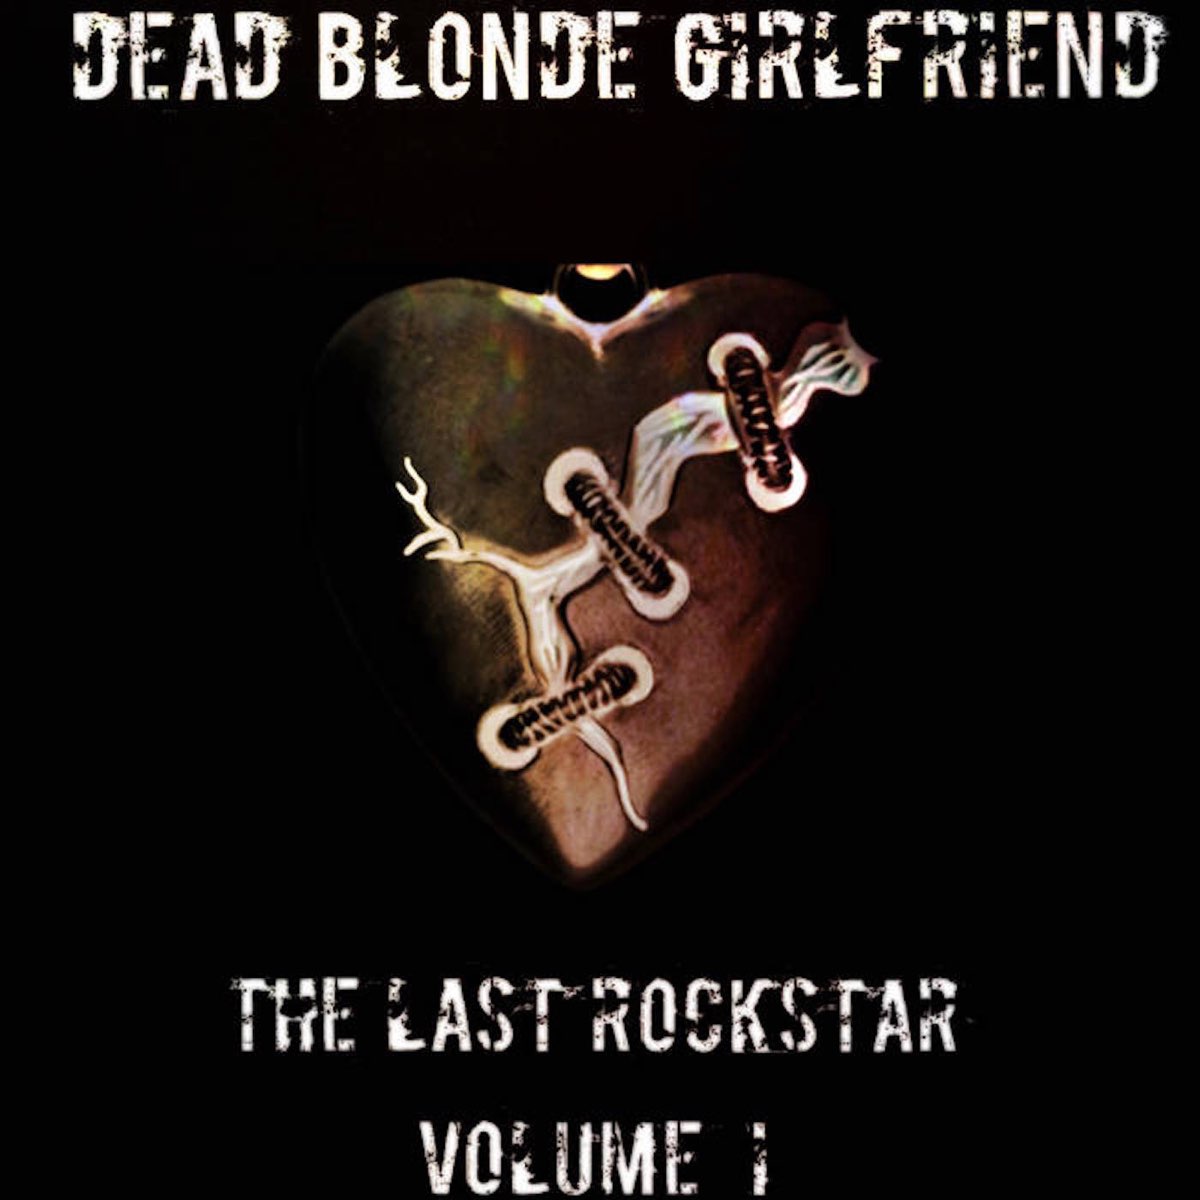 Dead blonde. Dead blonde песни. Dead blonde обложка альбома. Dead blonde лейбл. Dead blonde слушать песни